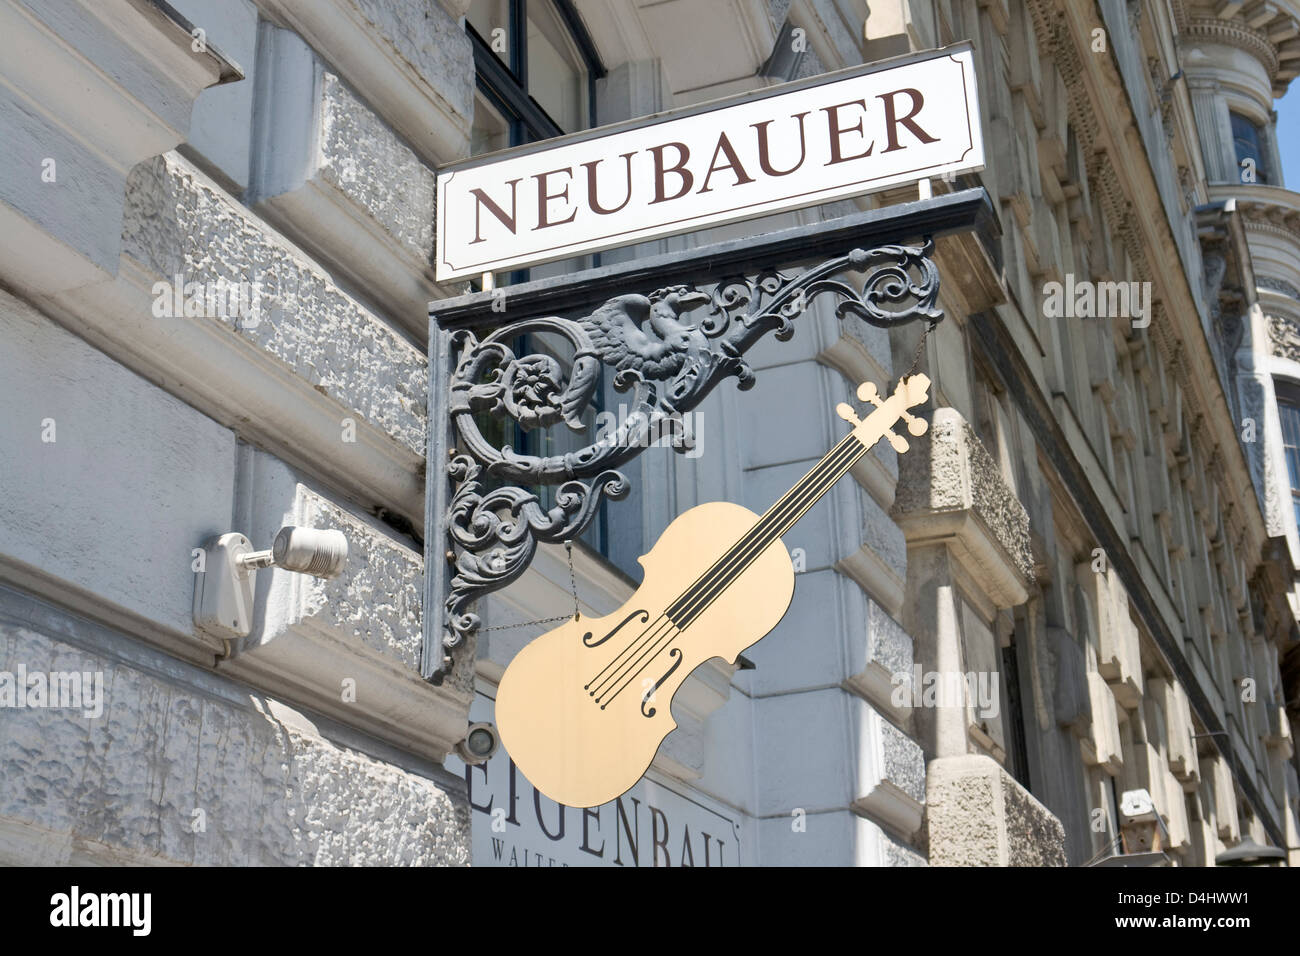 Neubauer Guitars Shop anmelden. KEINE FREIGABE. Stockfoto